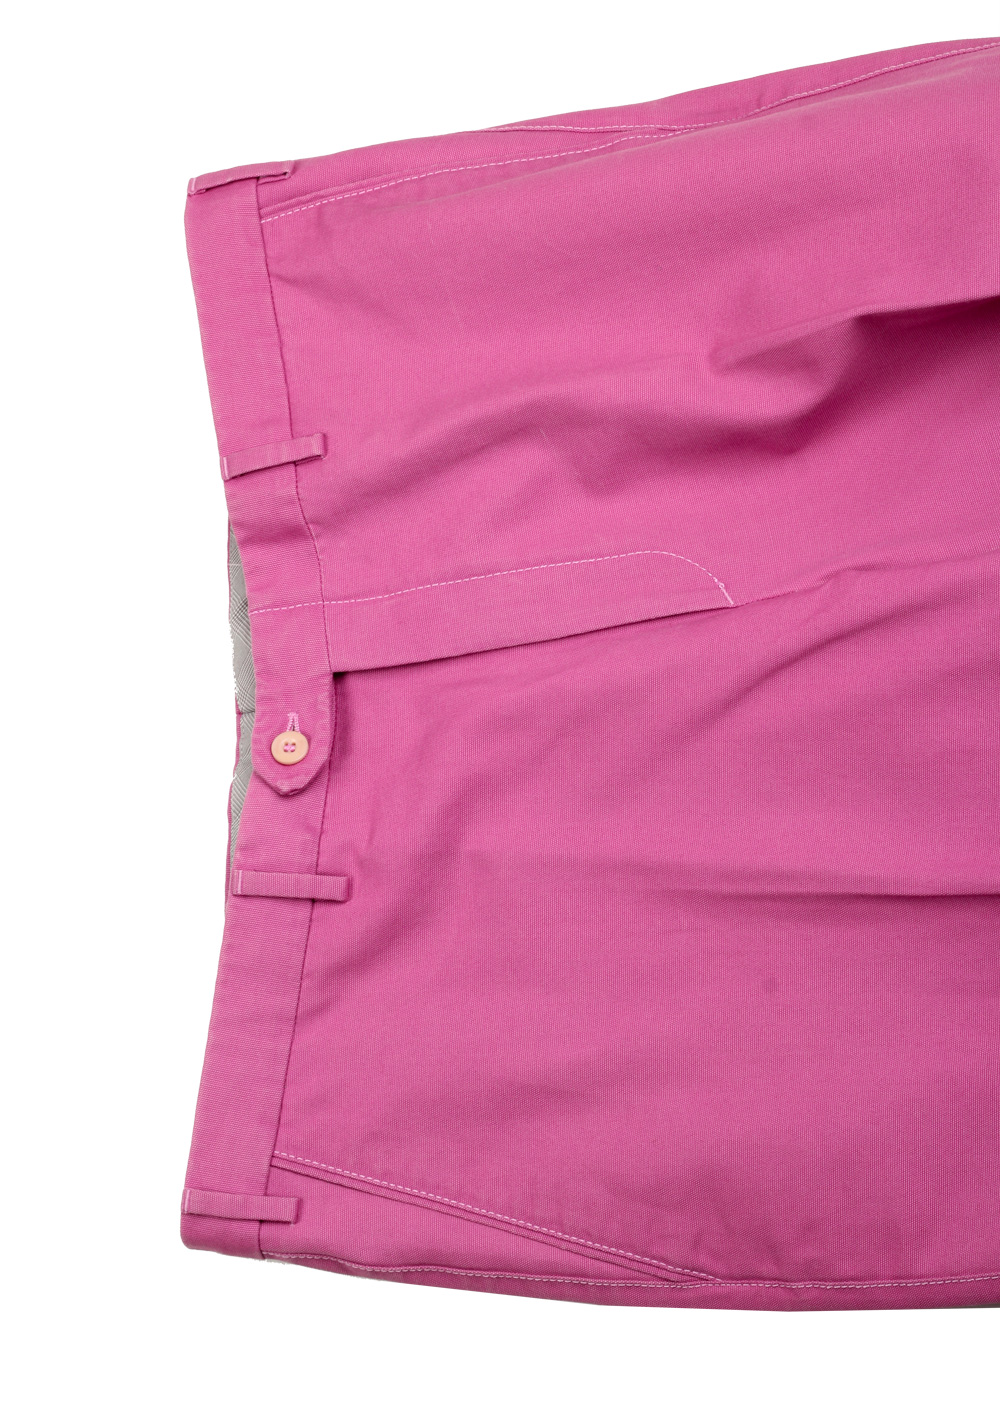 Brioni Pink Cotton Trousers | Costume Limité